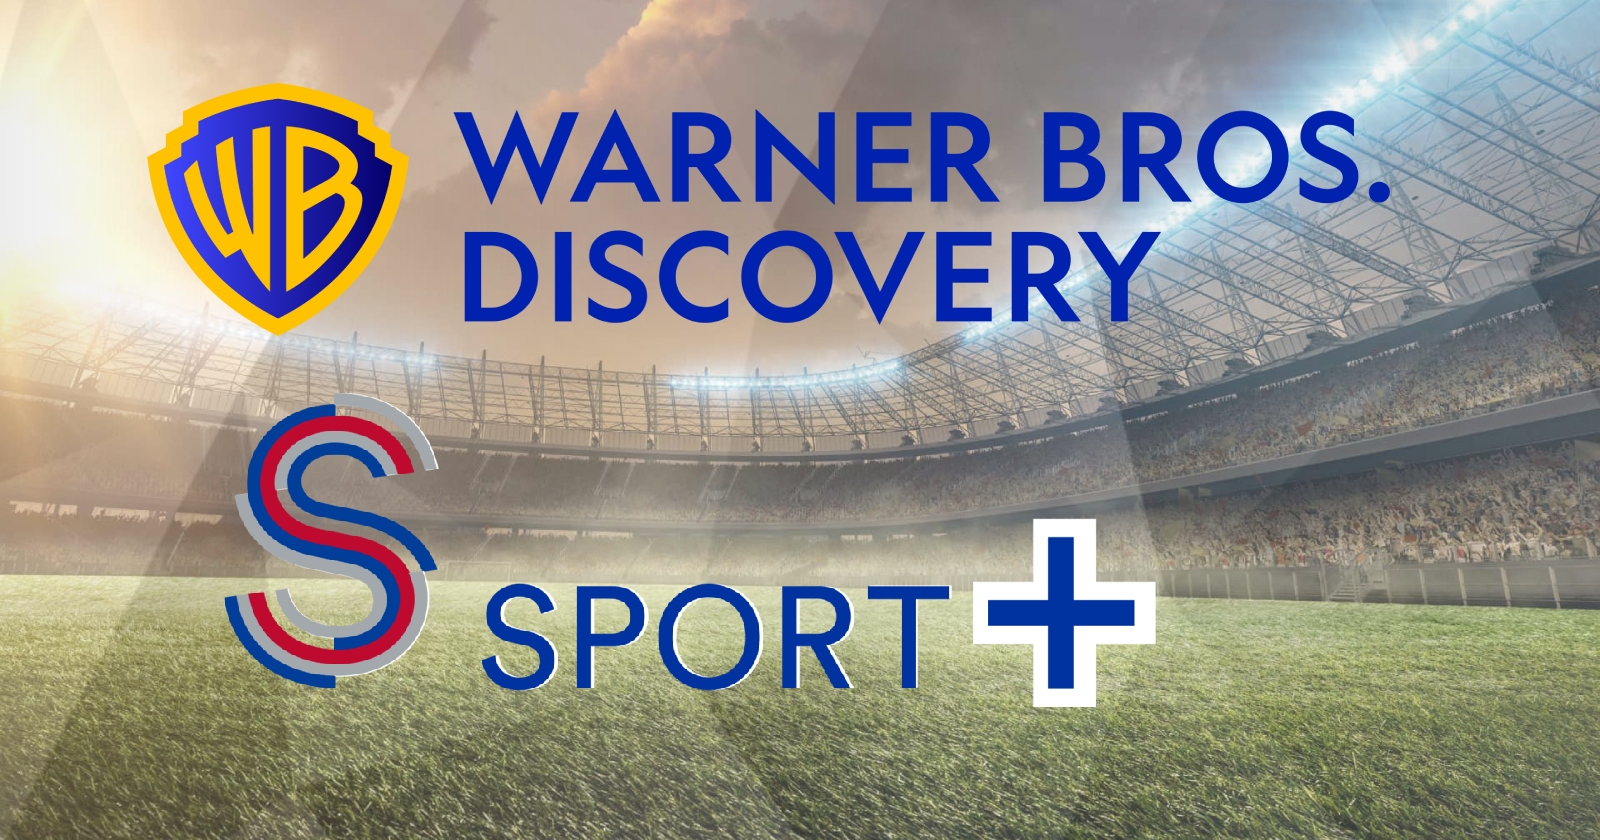 warner-bros-discovery-s-sport-plus-2.jpg